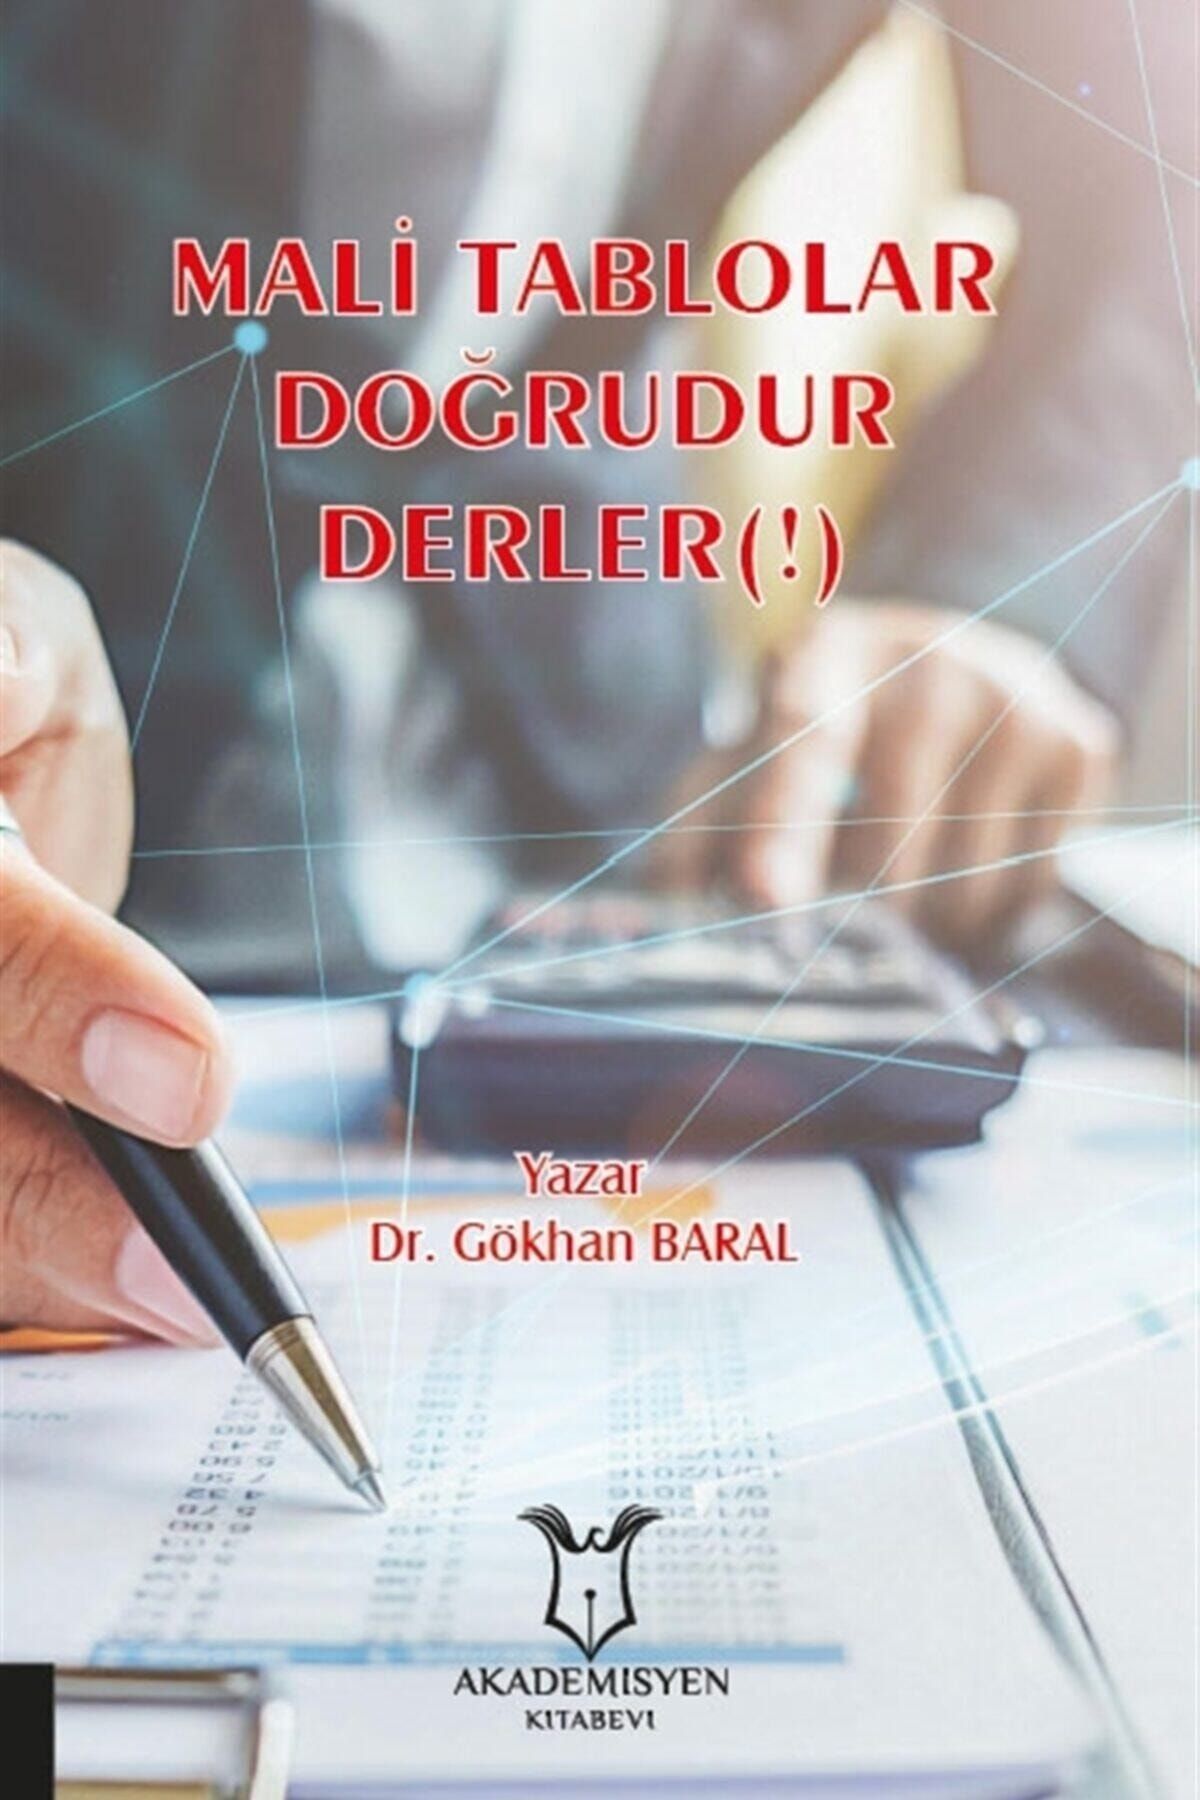 Akademisyen Kitabevi Mali Tablolar Doğrudur Derler(!)